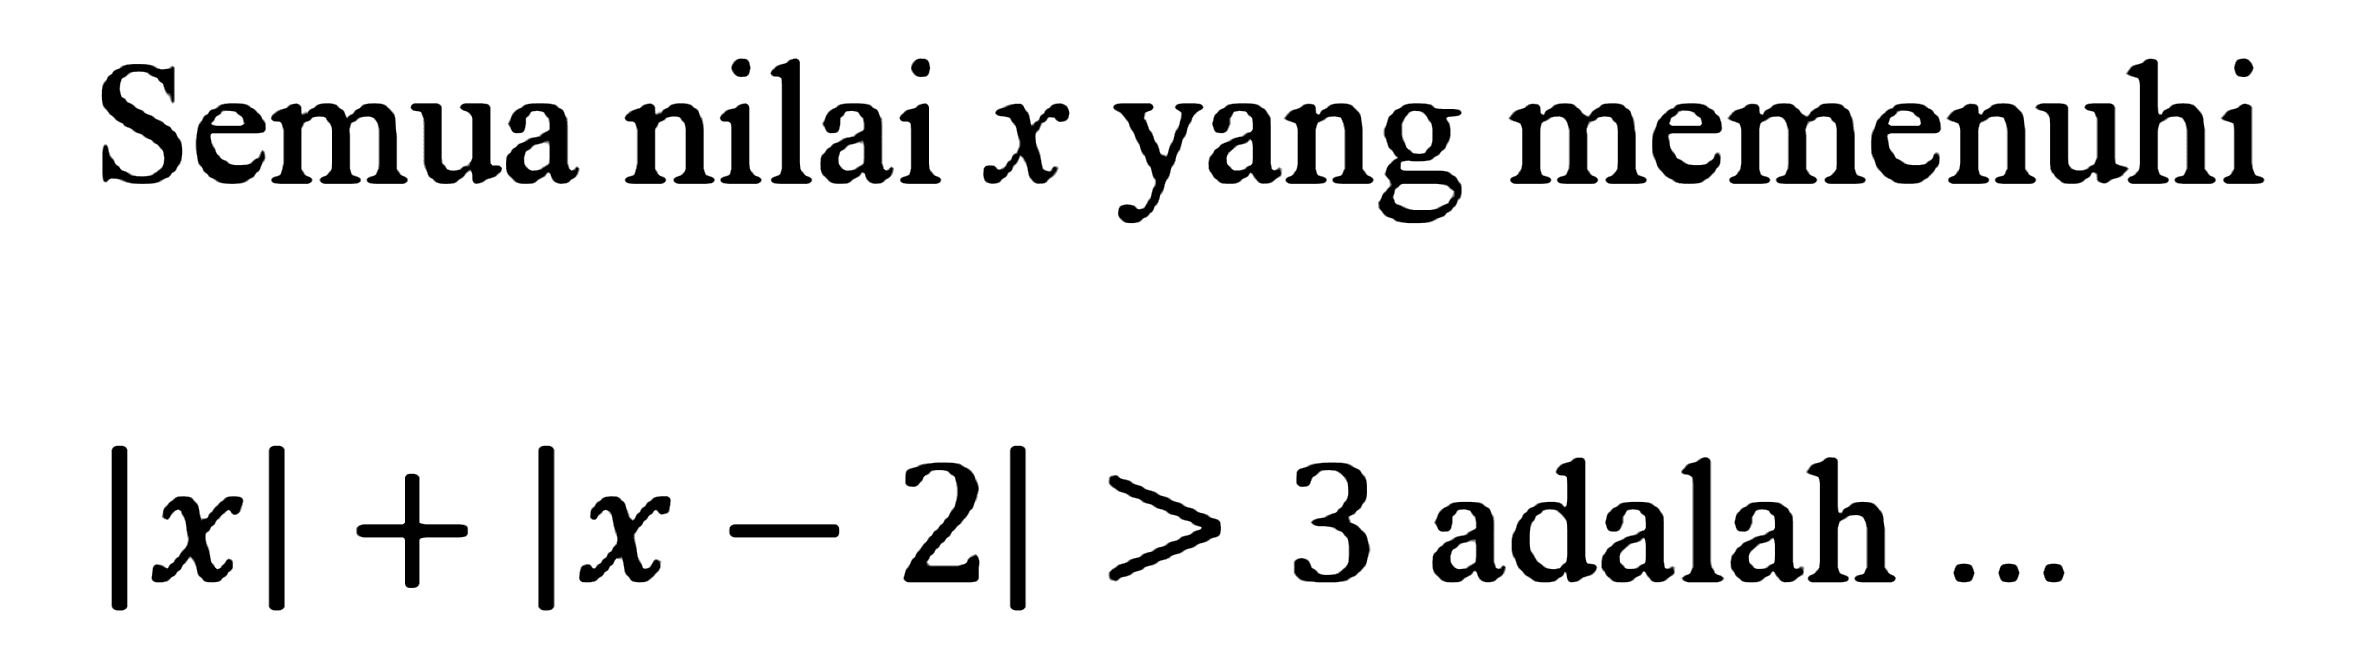 Semua nilai x yang memenuhi |x|+|x-2|>3 adalah ...